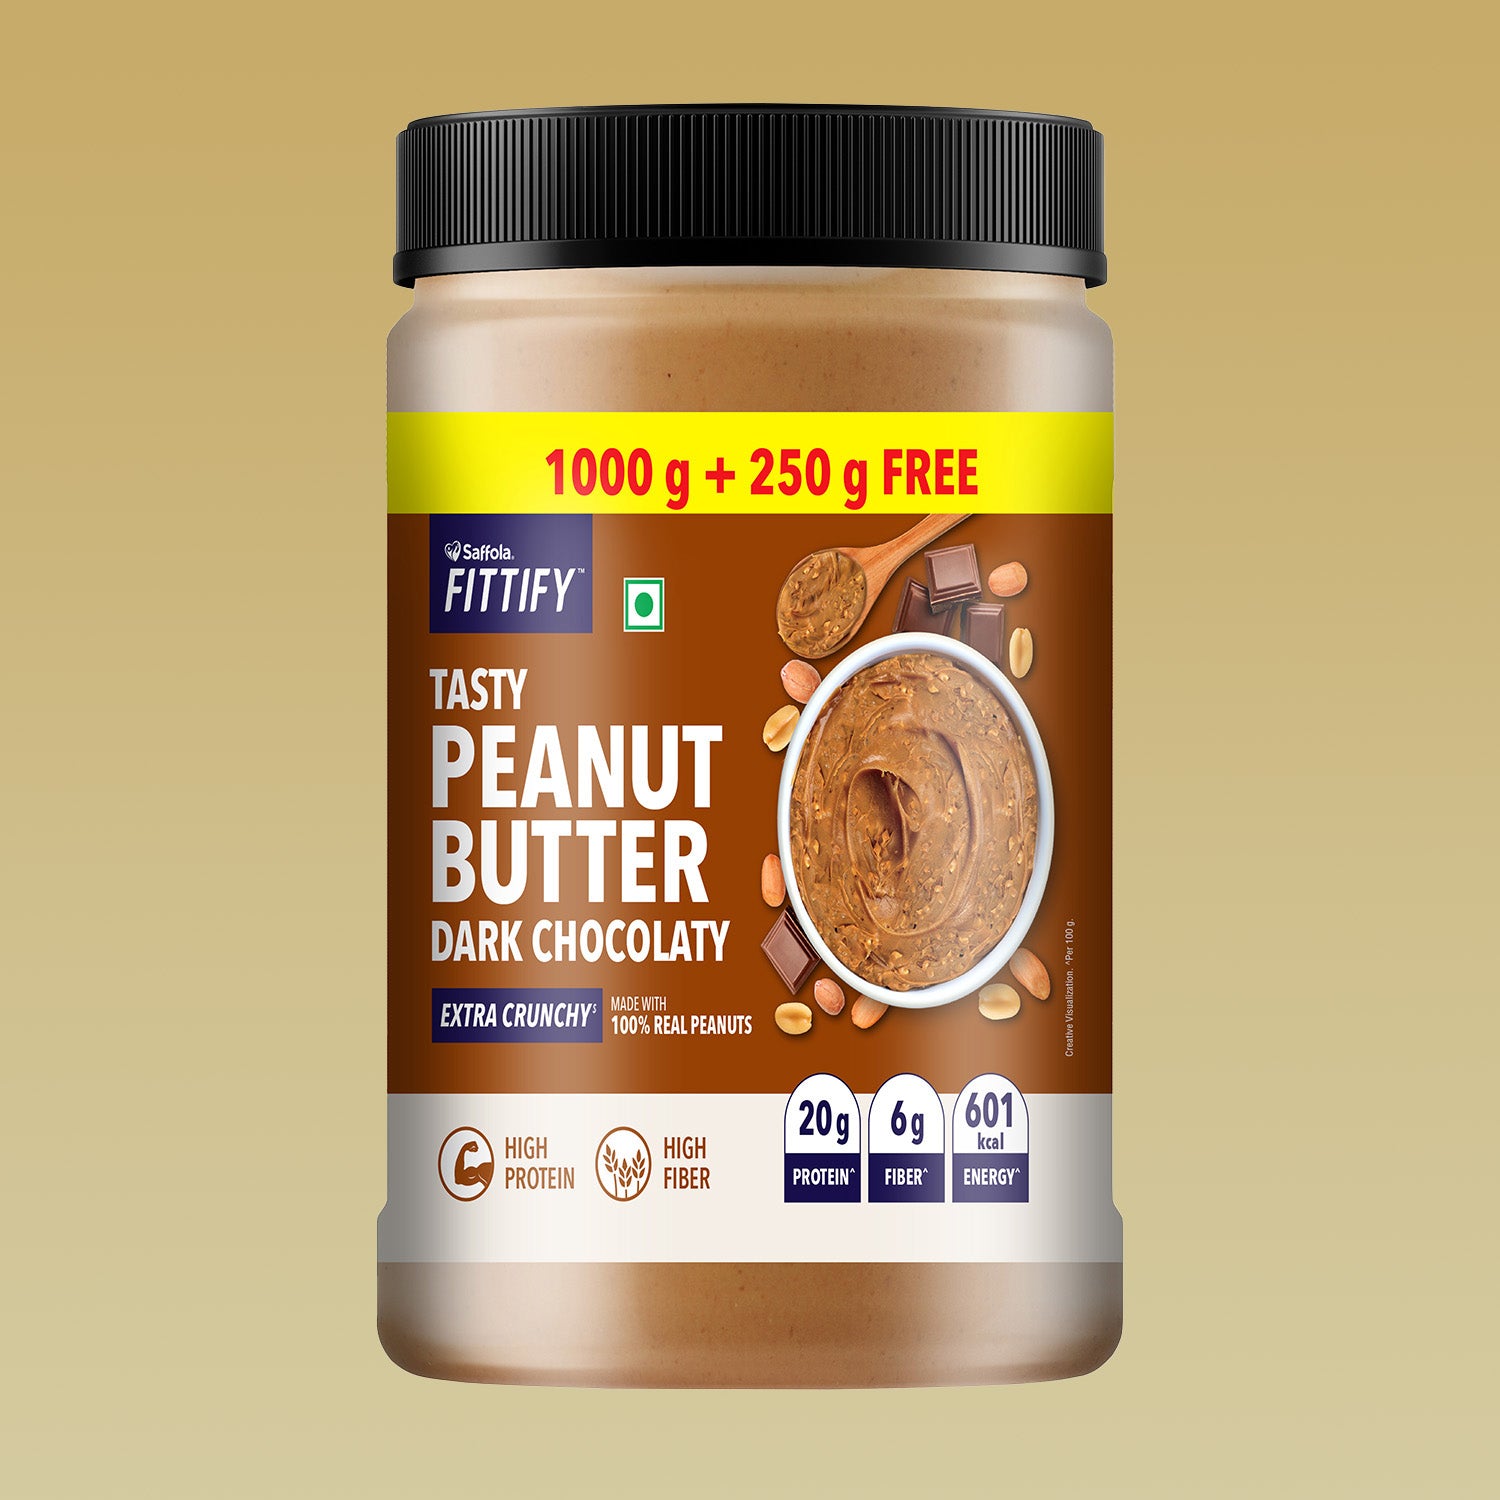 Saffola FITTIFY Tasty Peanut Butter Dark Chocolaty